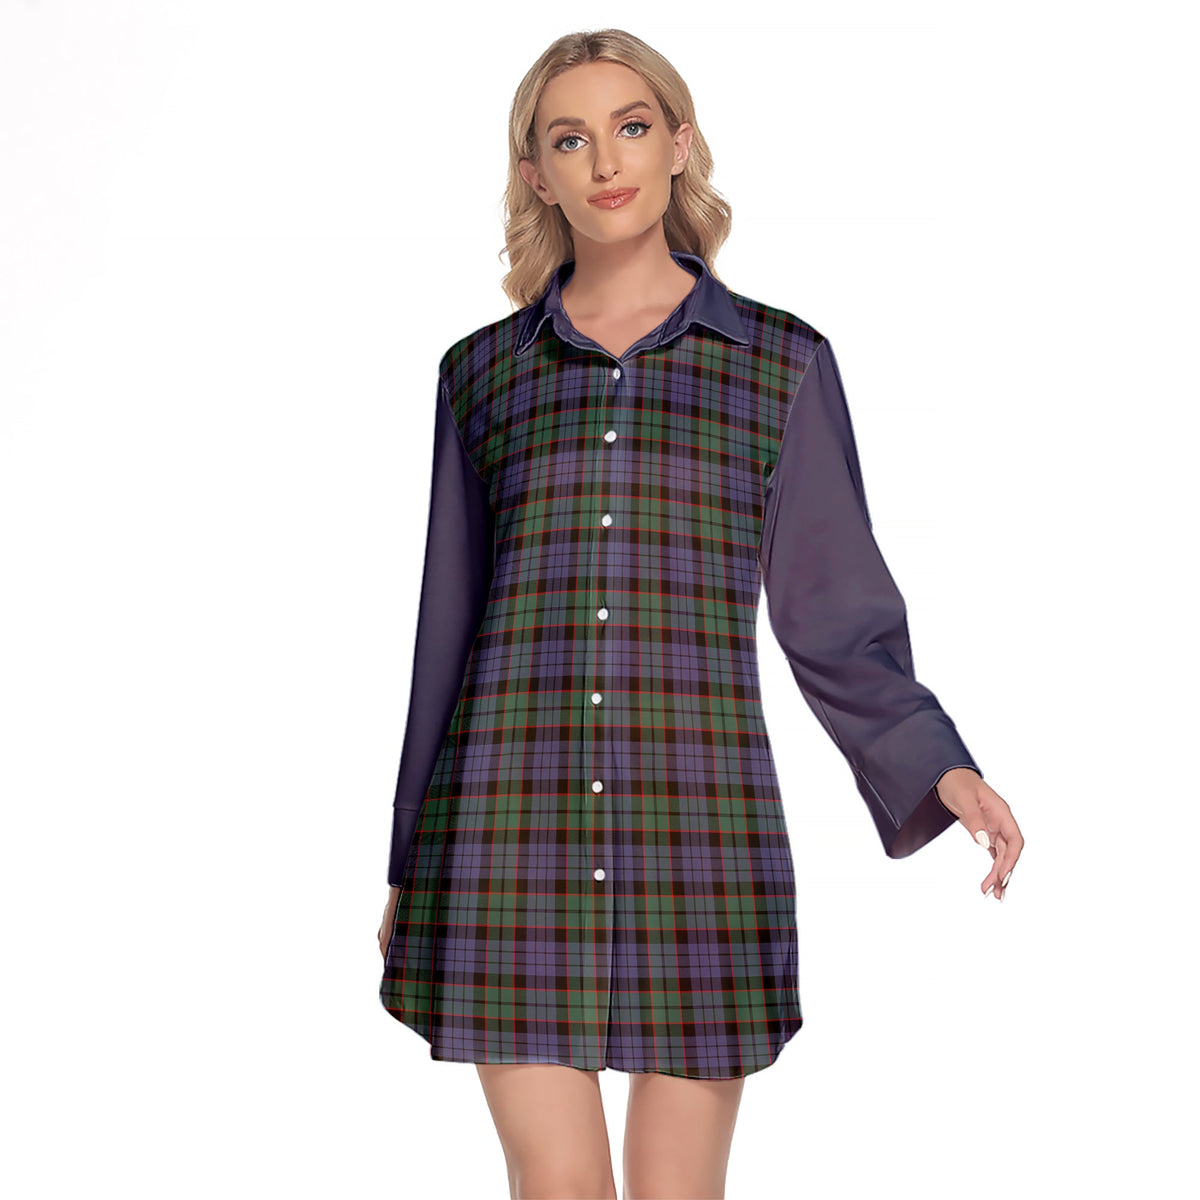 Fletcher Modern Tartan Women's Lapel Shirt Dress With Long Sleeve